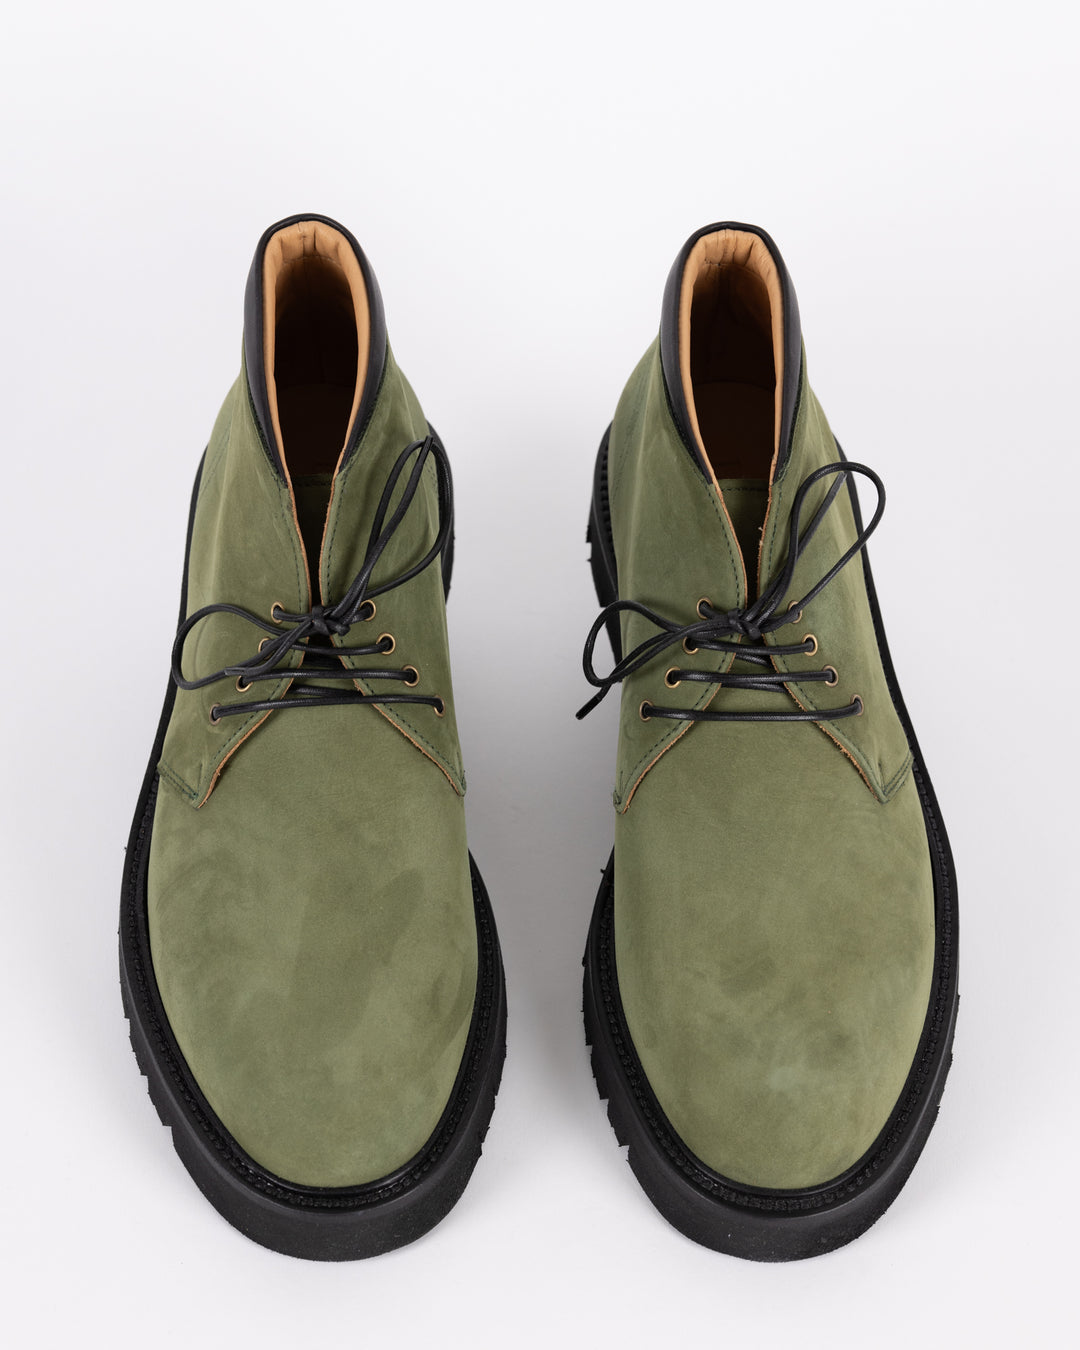 BRINDISI NABUK Boots - Green